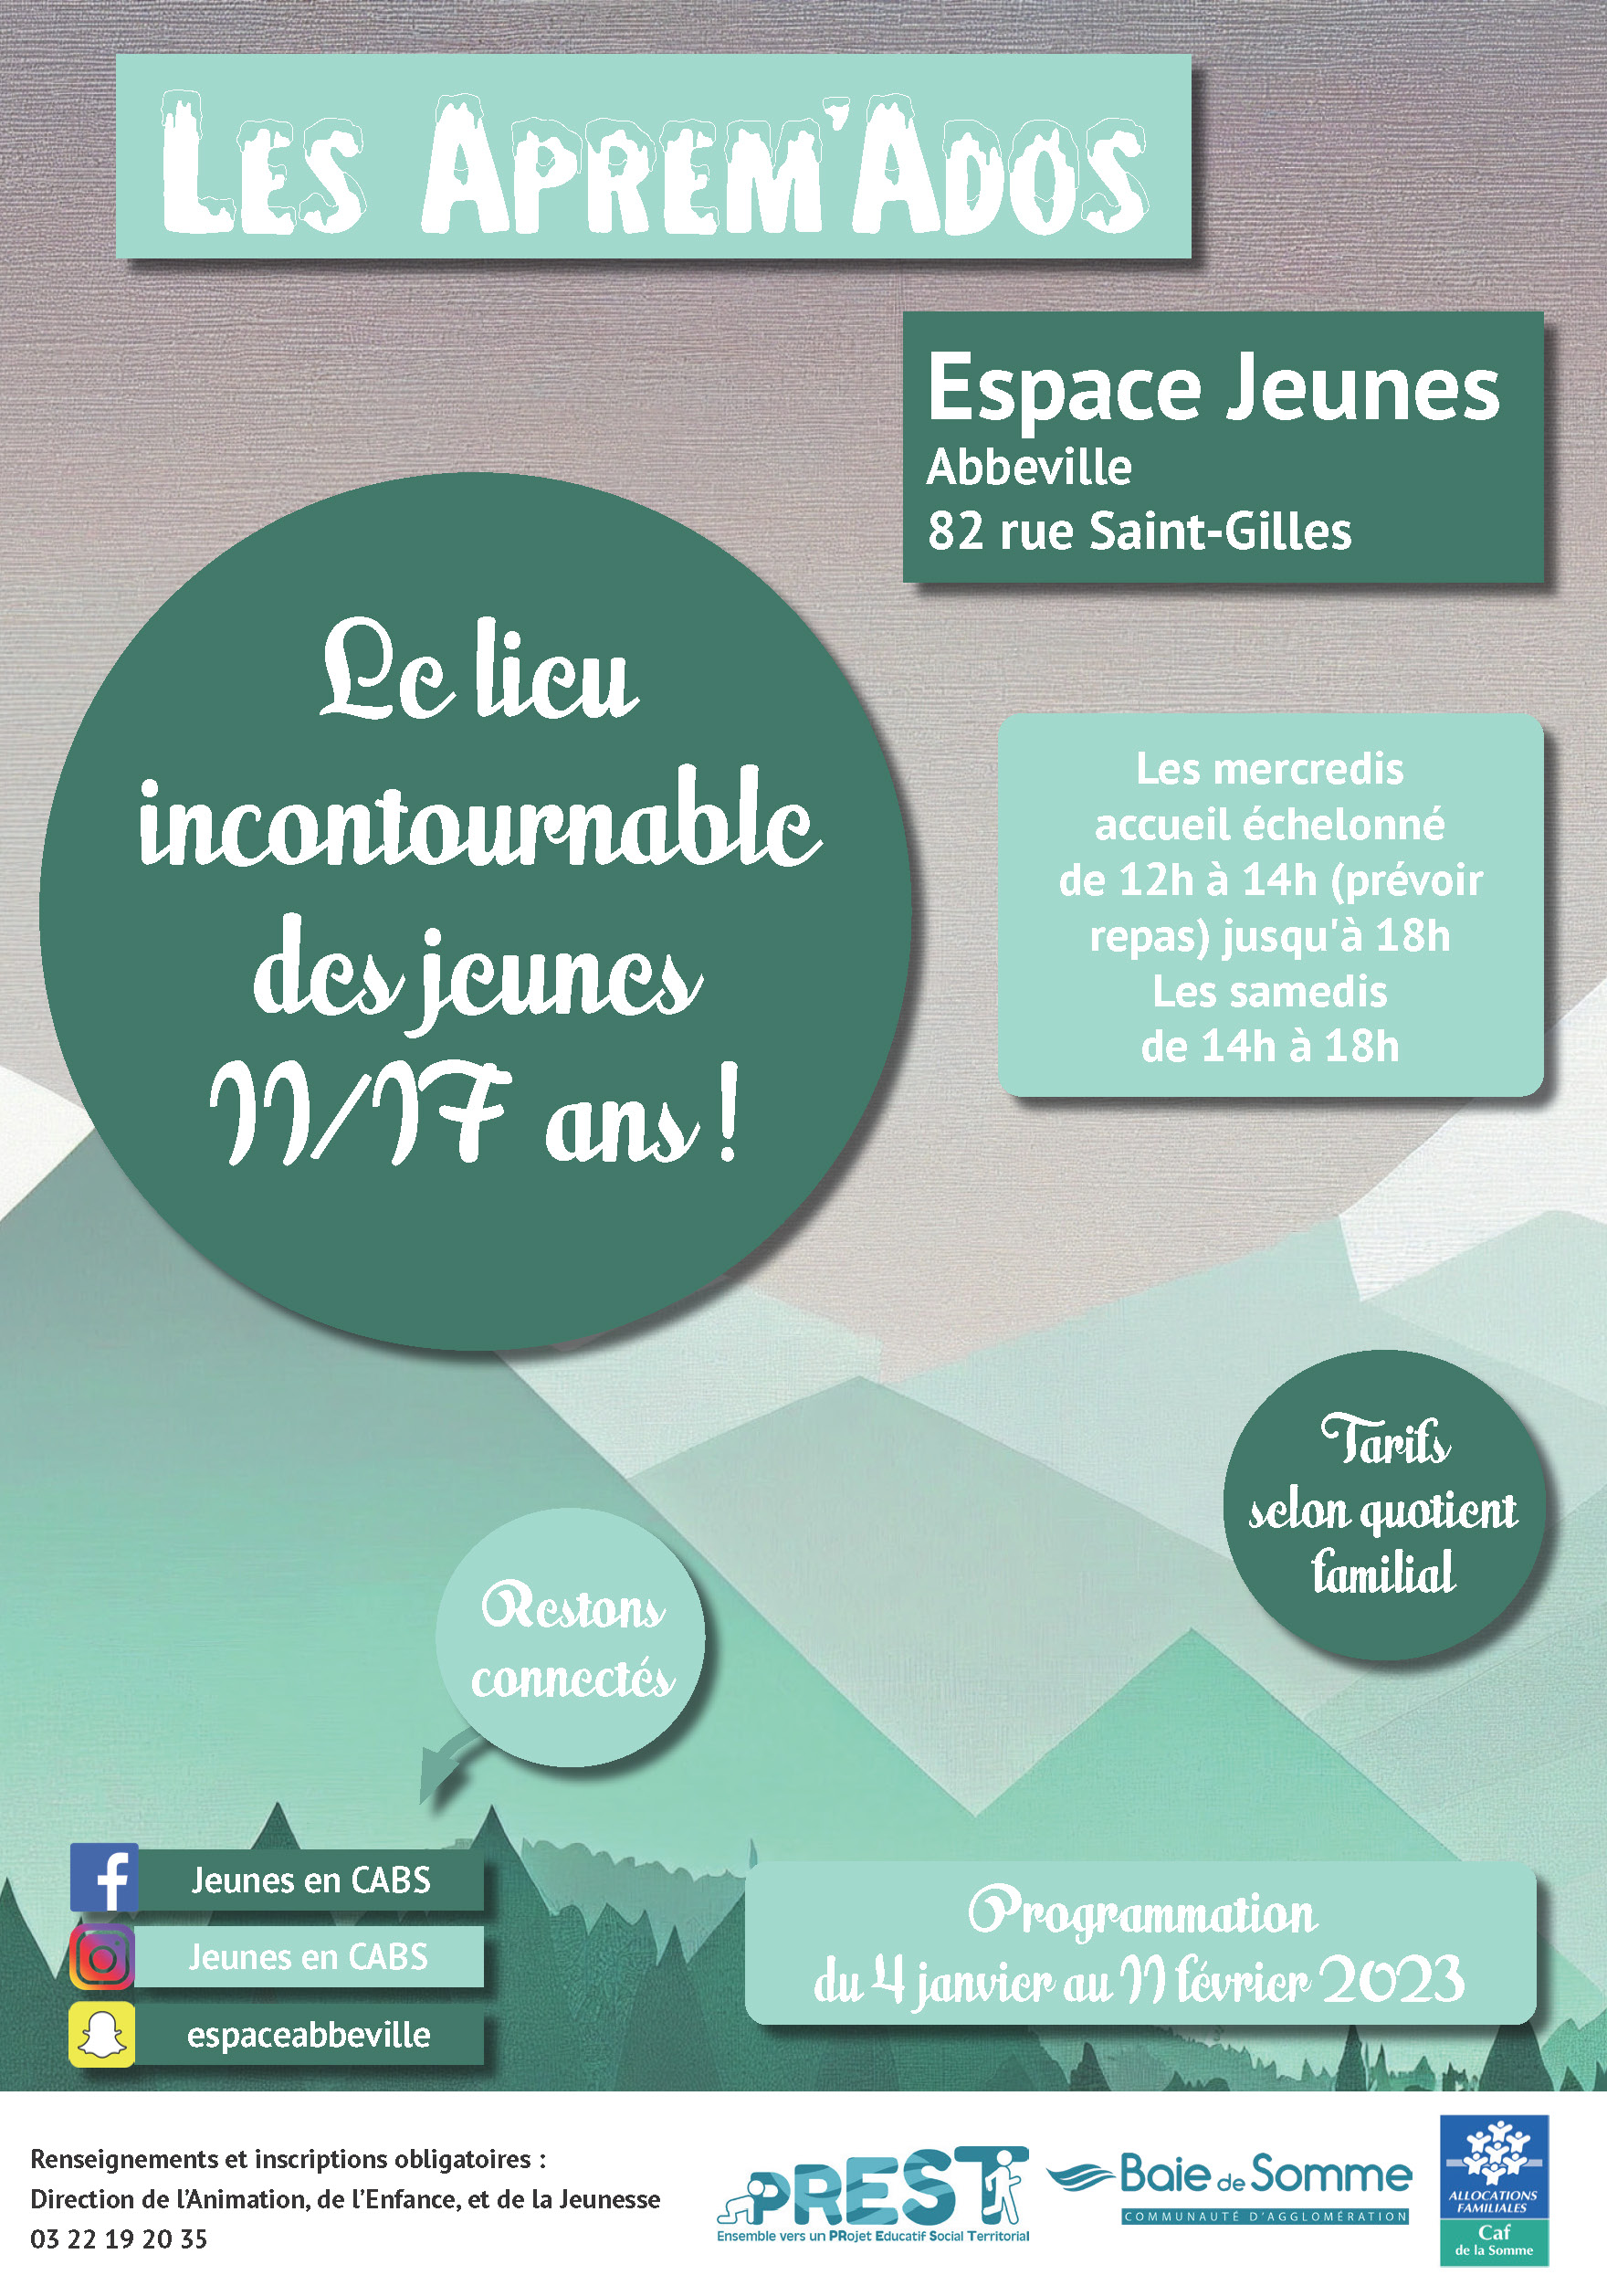 You are currently viewing Programme Espace Jeunes du 7 janvier au 11 février 2023